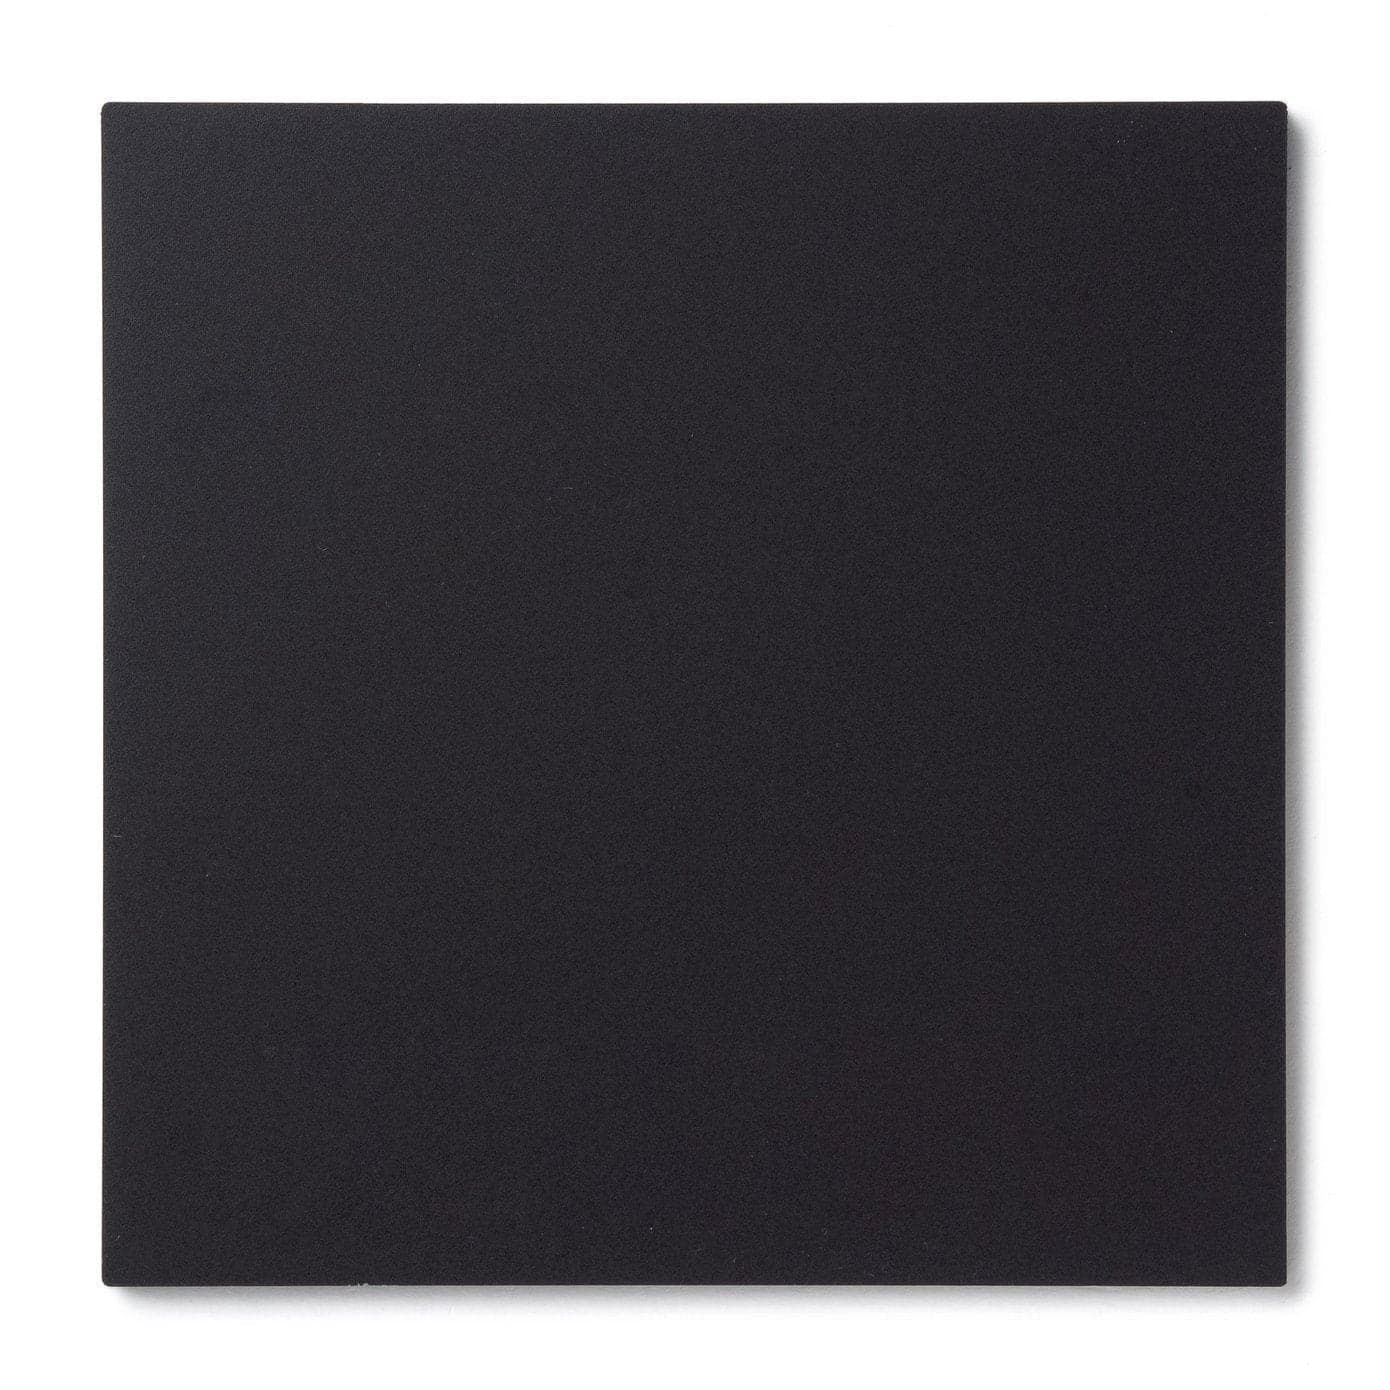 Acrylic Sheet 1/4" Black Matte P95 #M2025